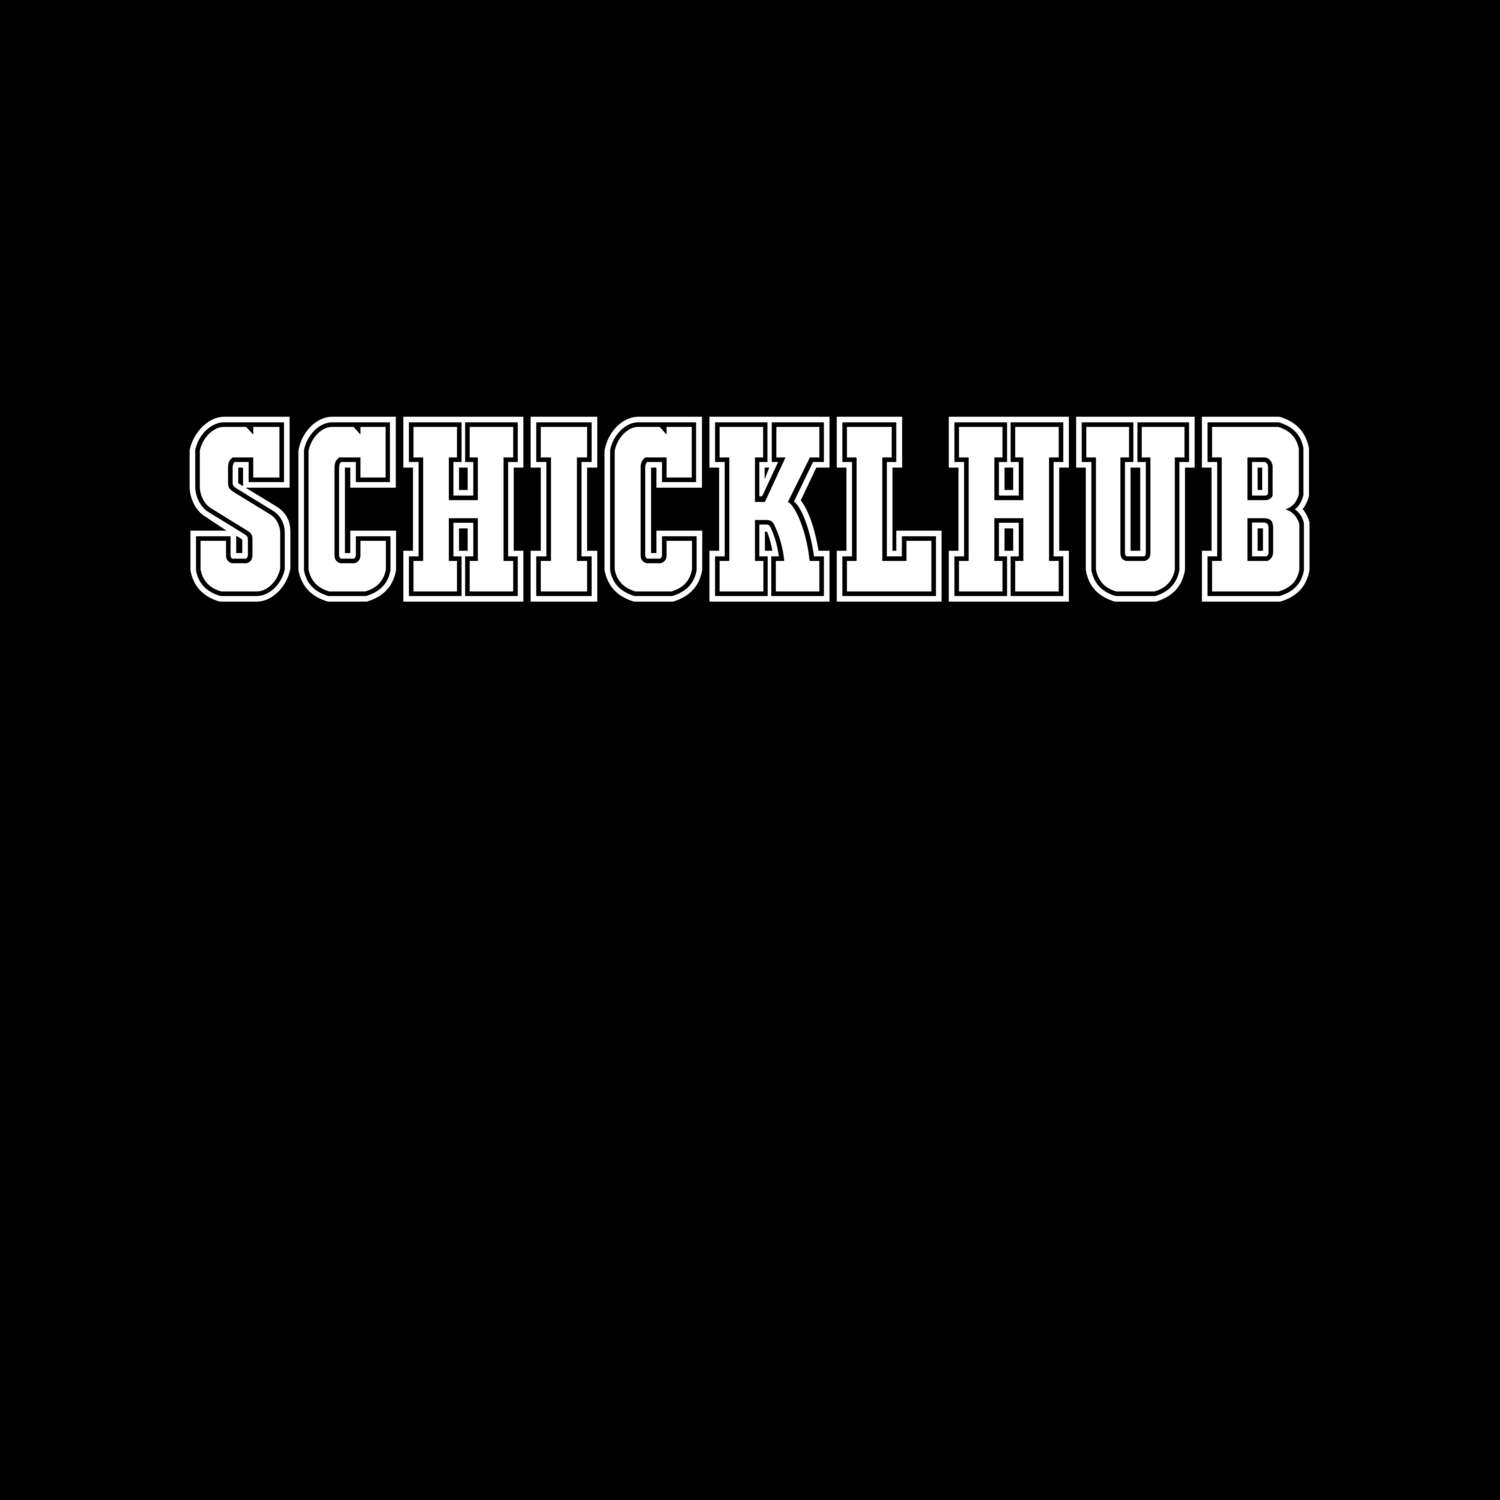 Schicklhub T-Shirt »Classic«